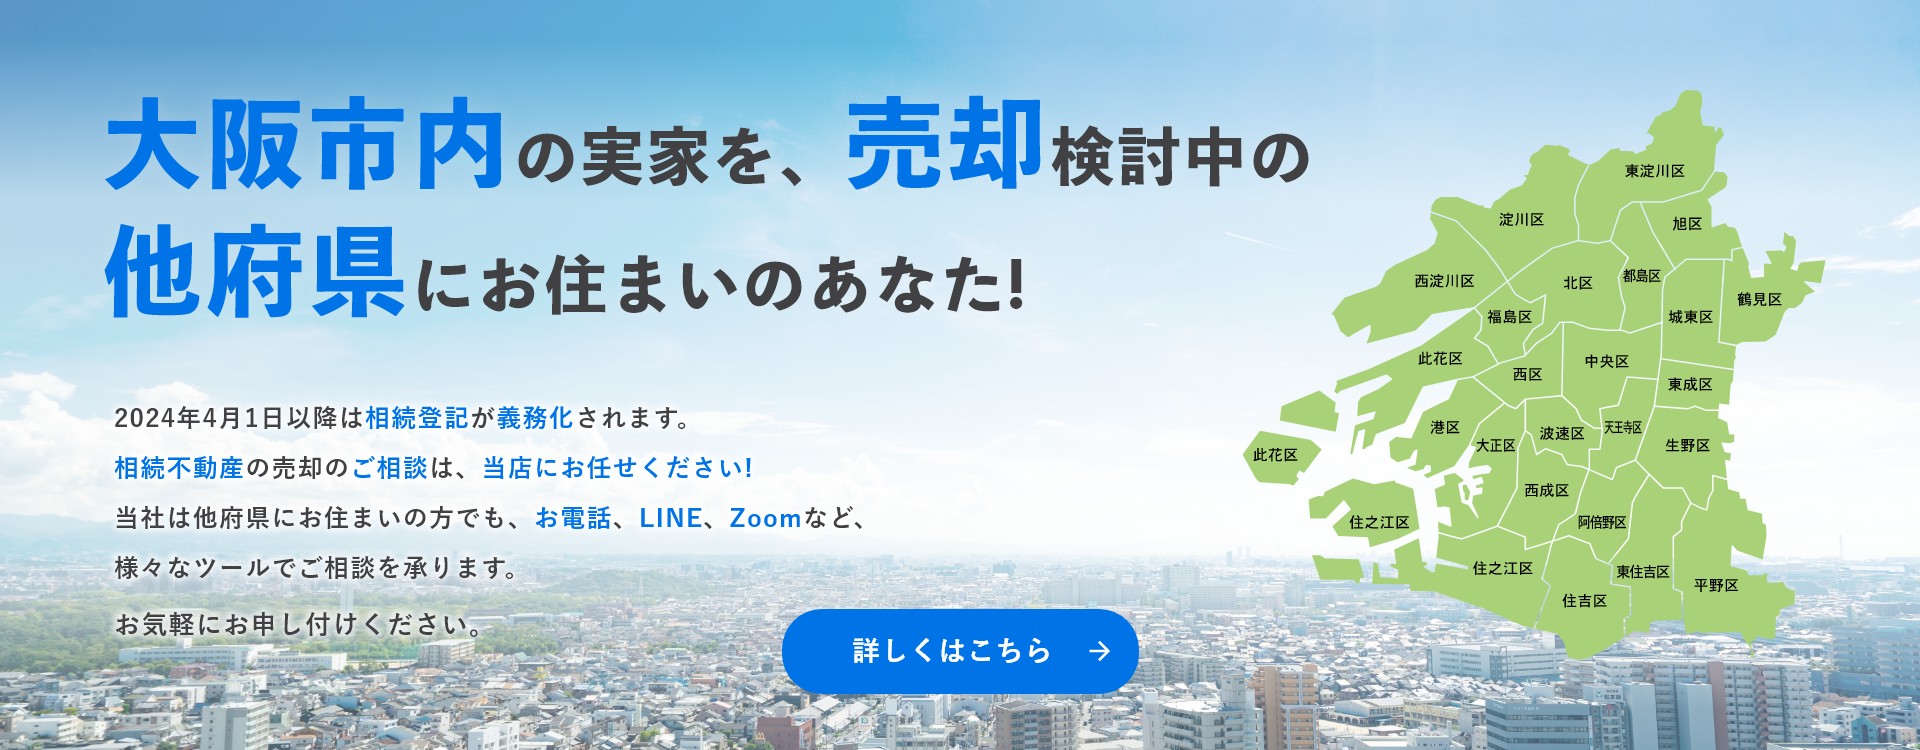 大阪市内の実家を、売却検討中の他府県にお住まいのあなた!